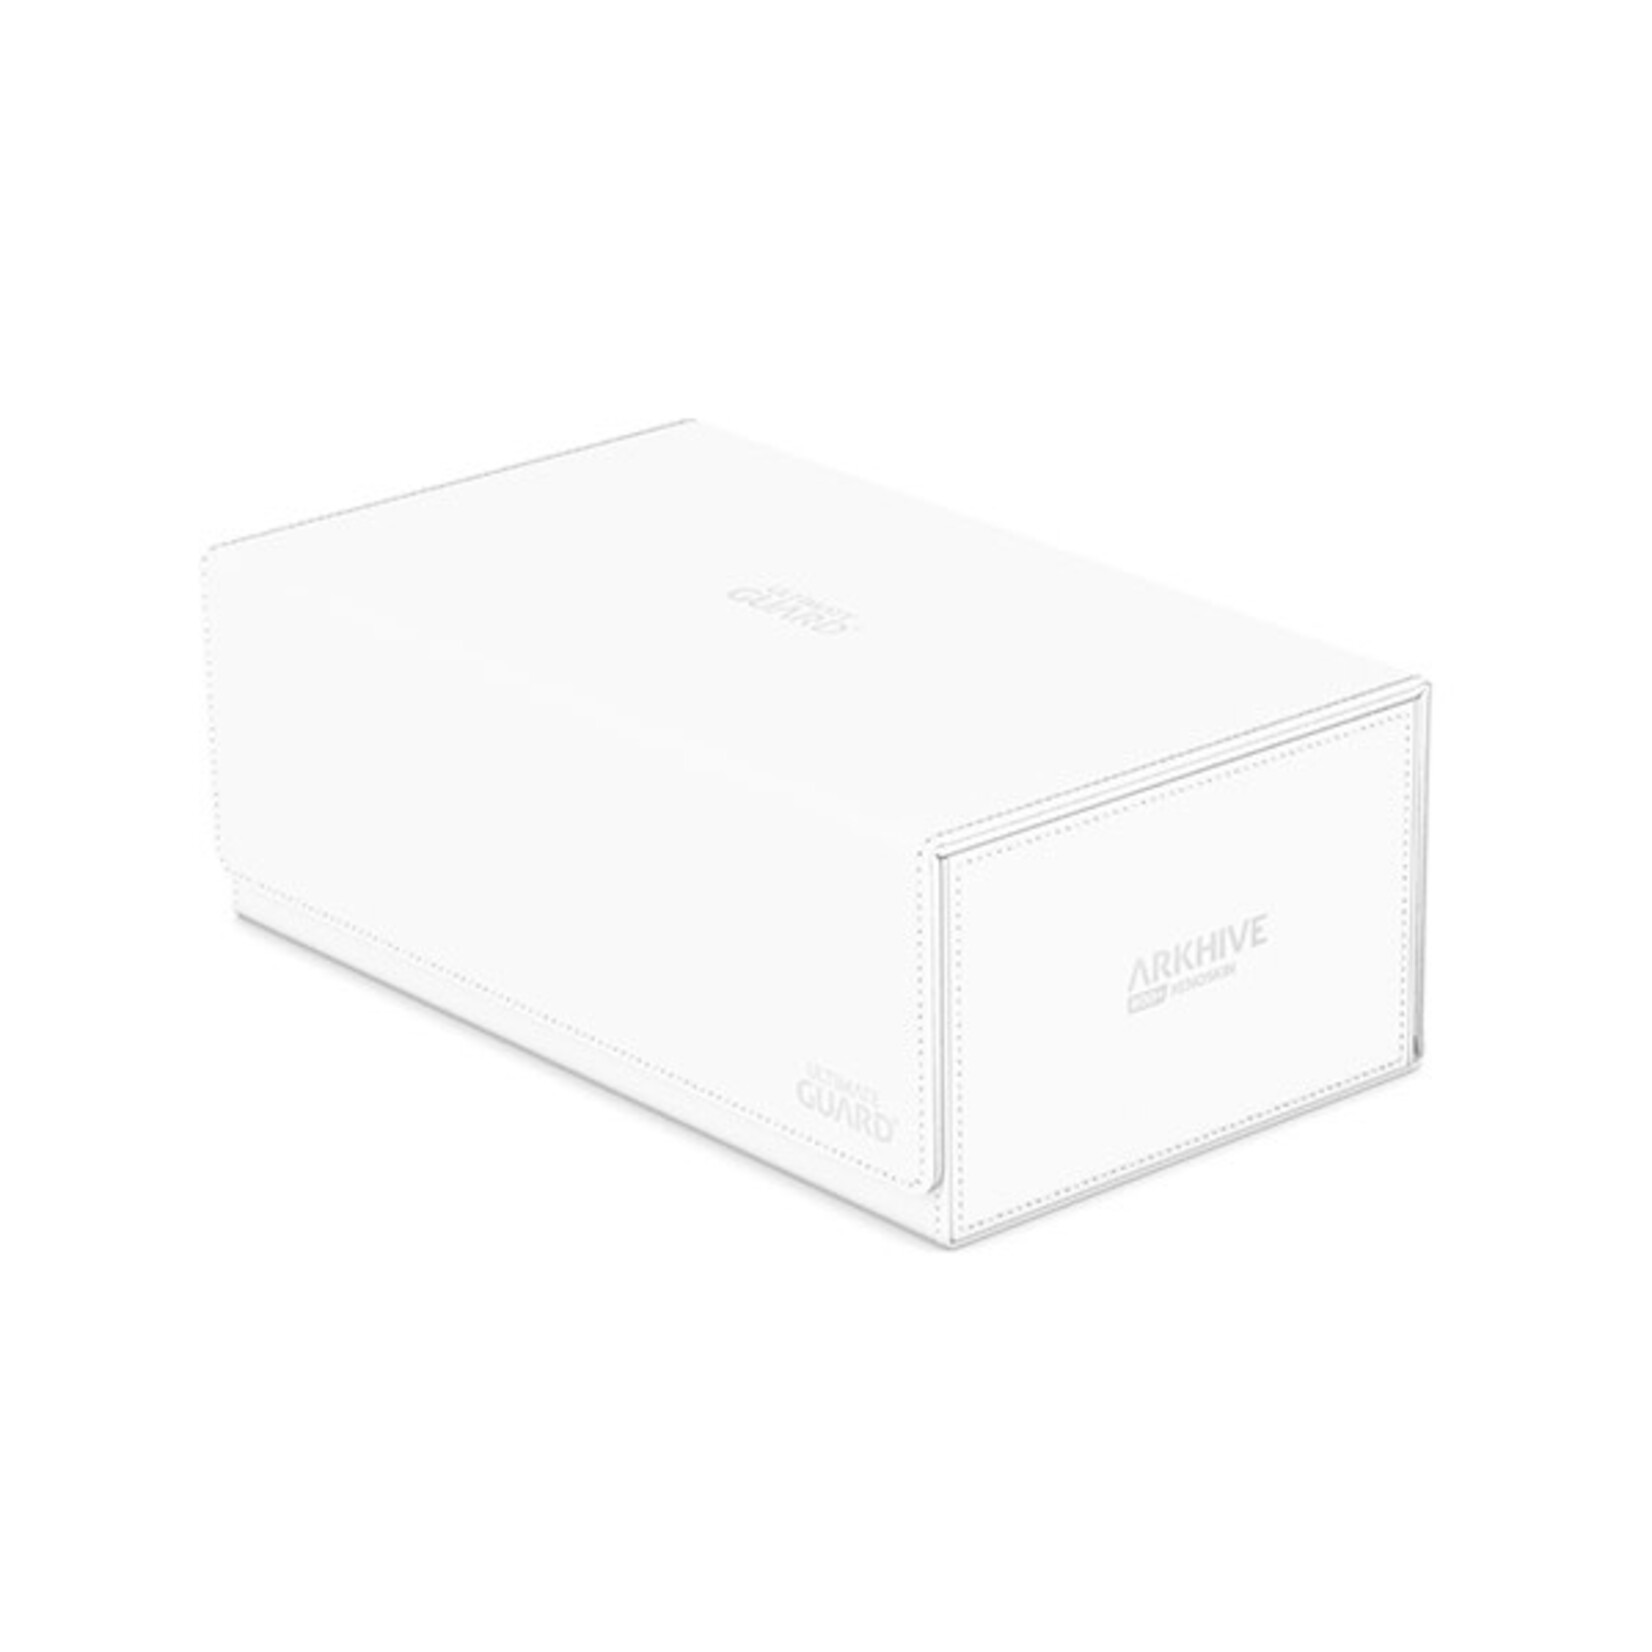 Ultimate Guard Arkhive Storage Box (White) (800+)